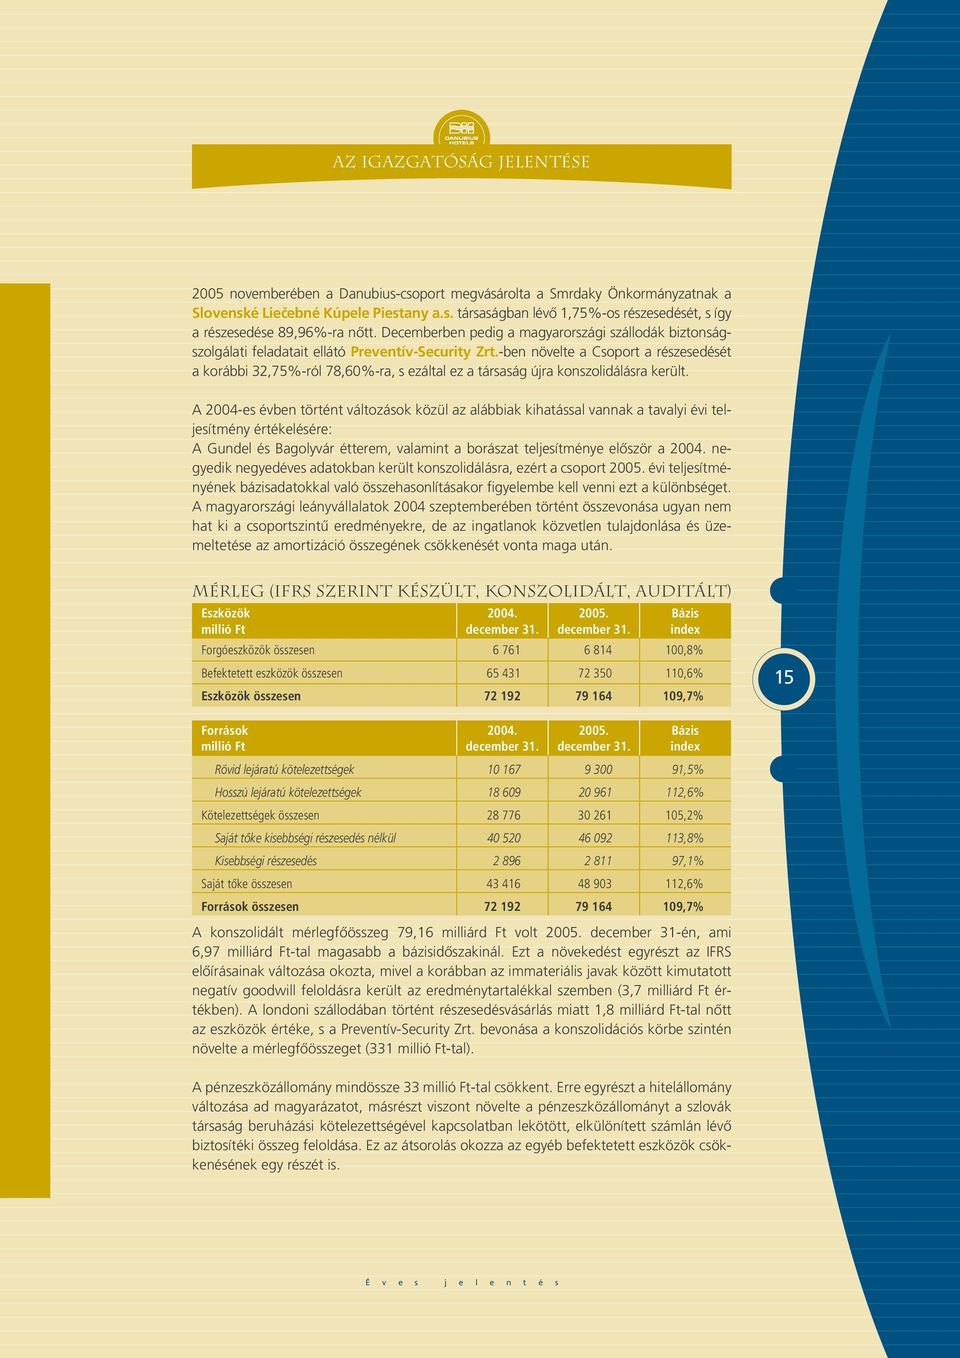 -ben növelte a Csoport a részesedését a korábbi 32,75%-ról 78,60%-ra, s ezáltal ez a társaság újra konszolidálásra került.